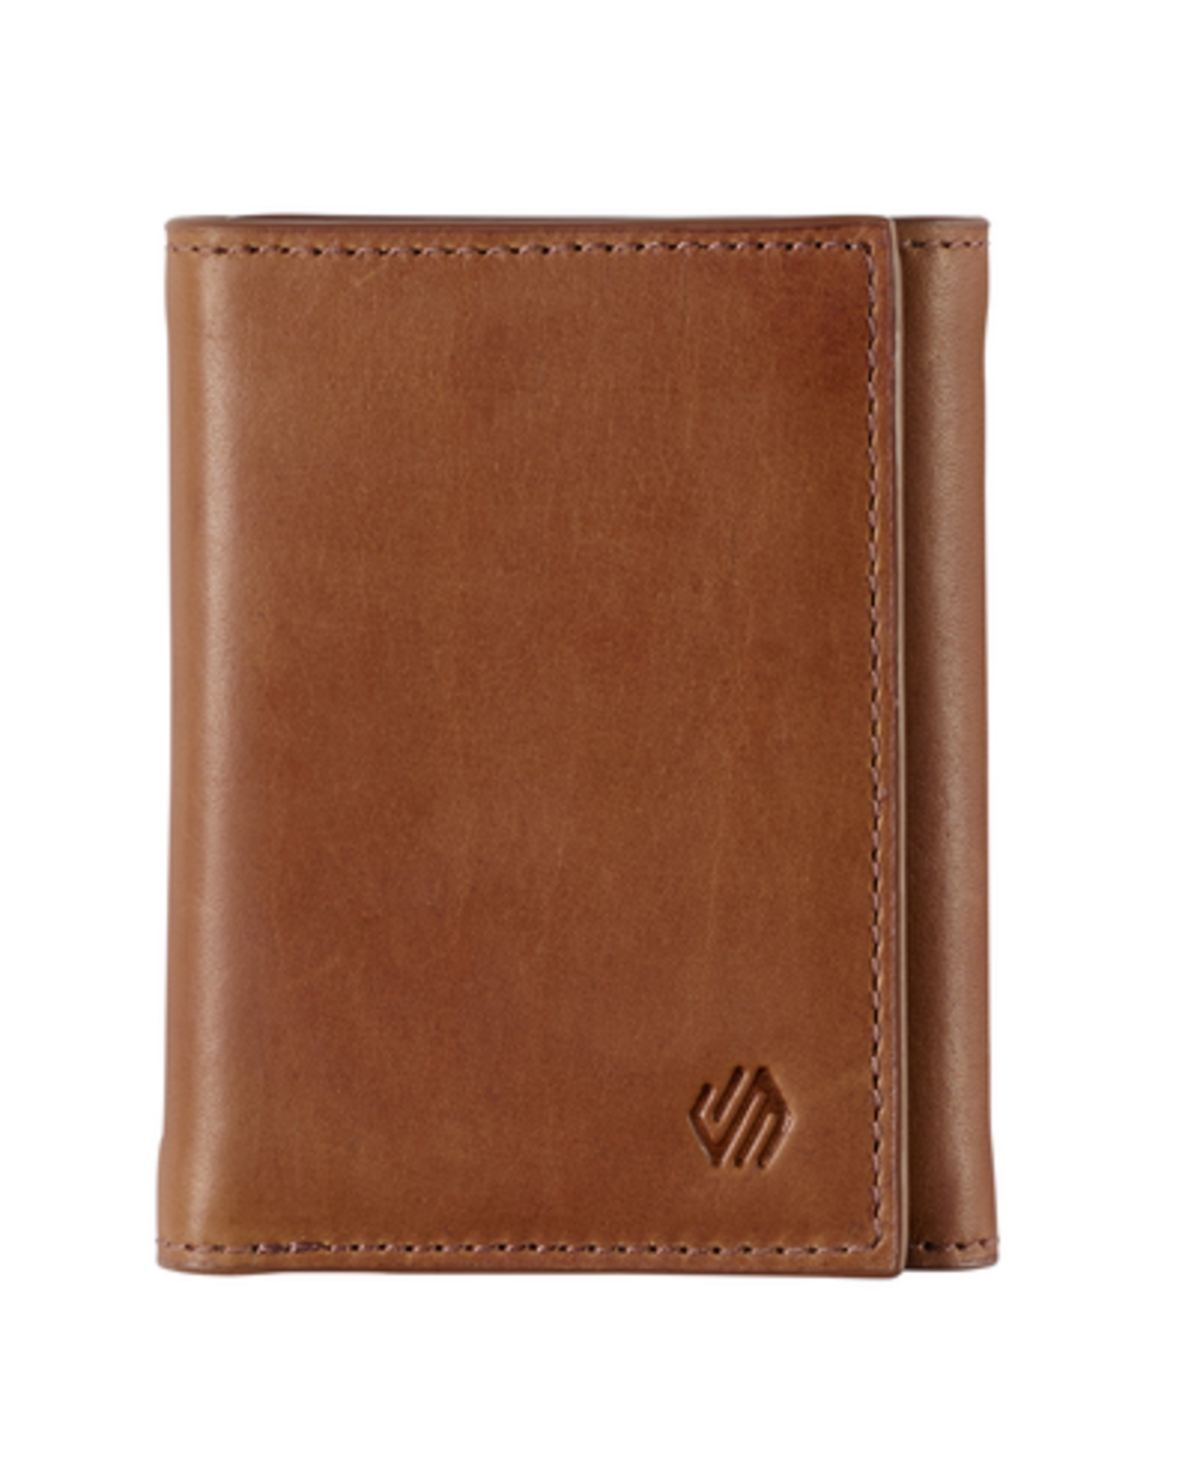 Johnston & Murphy Men's Rhodes Trifold Wallet In Tan Full Grain Leather